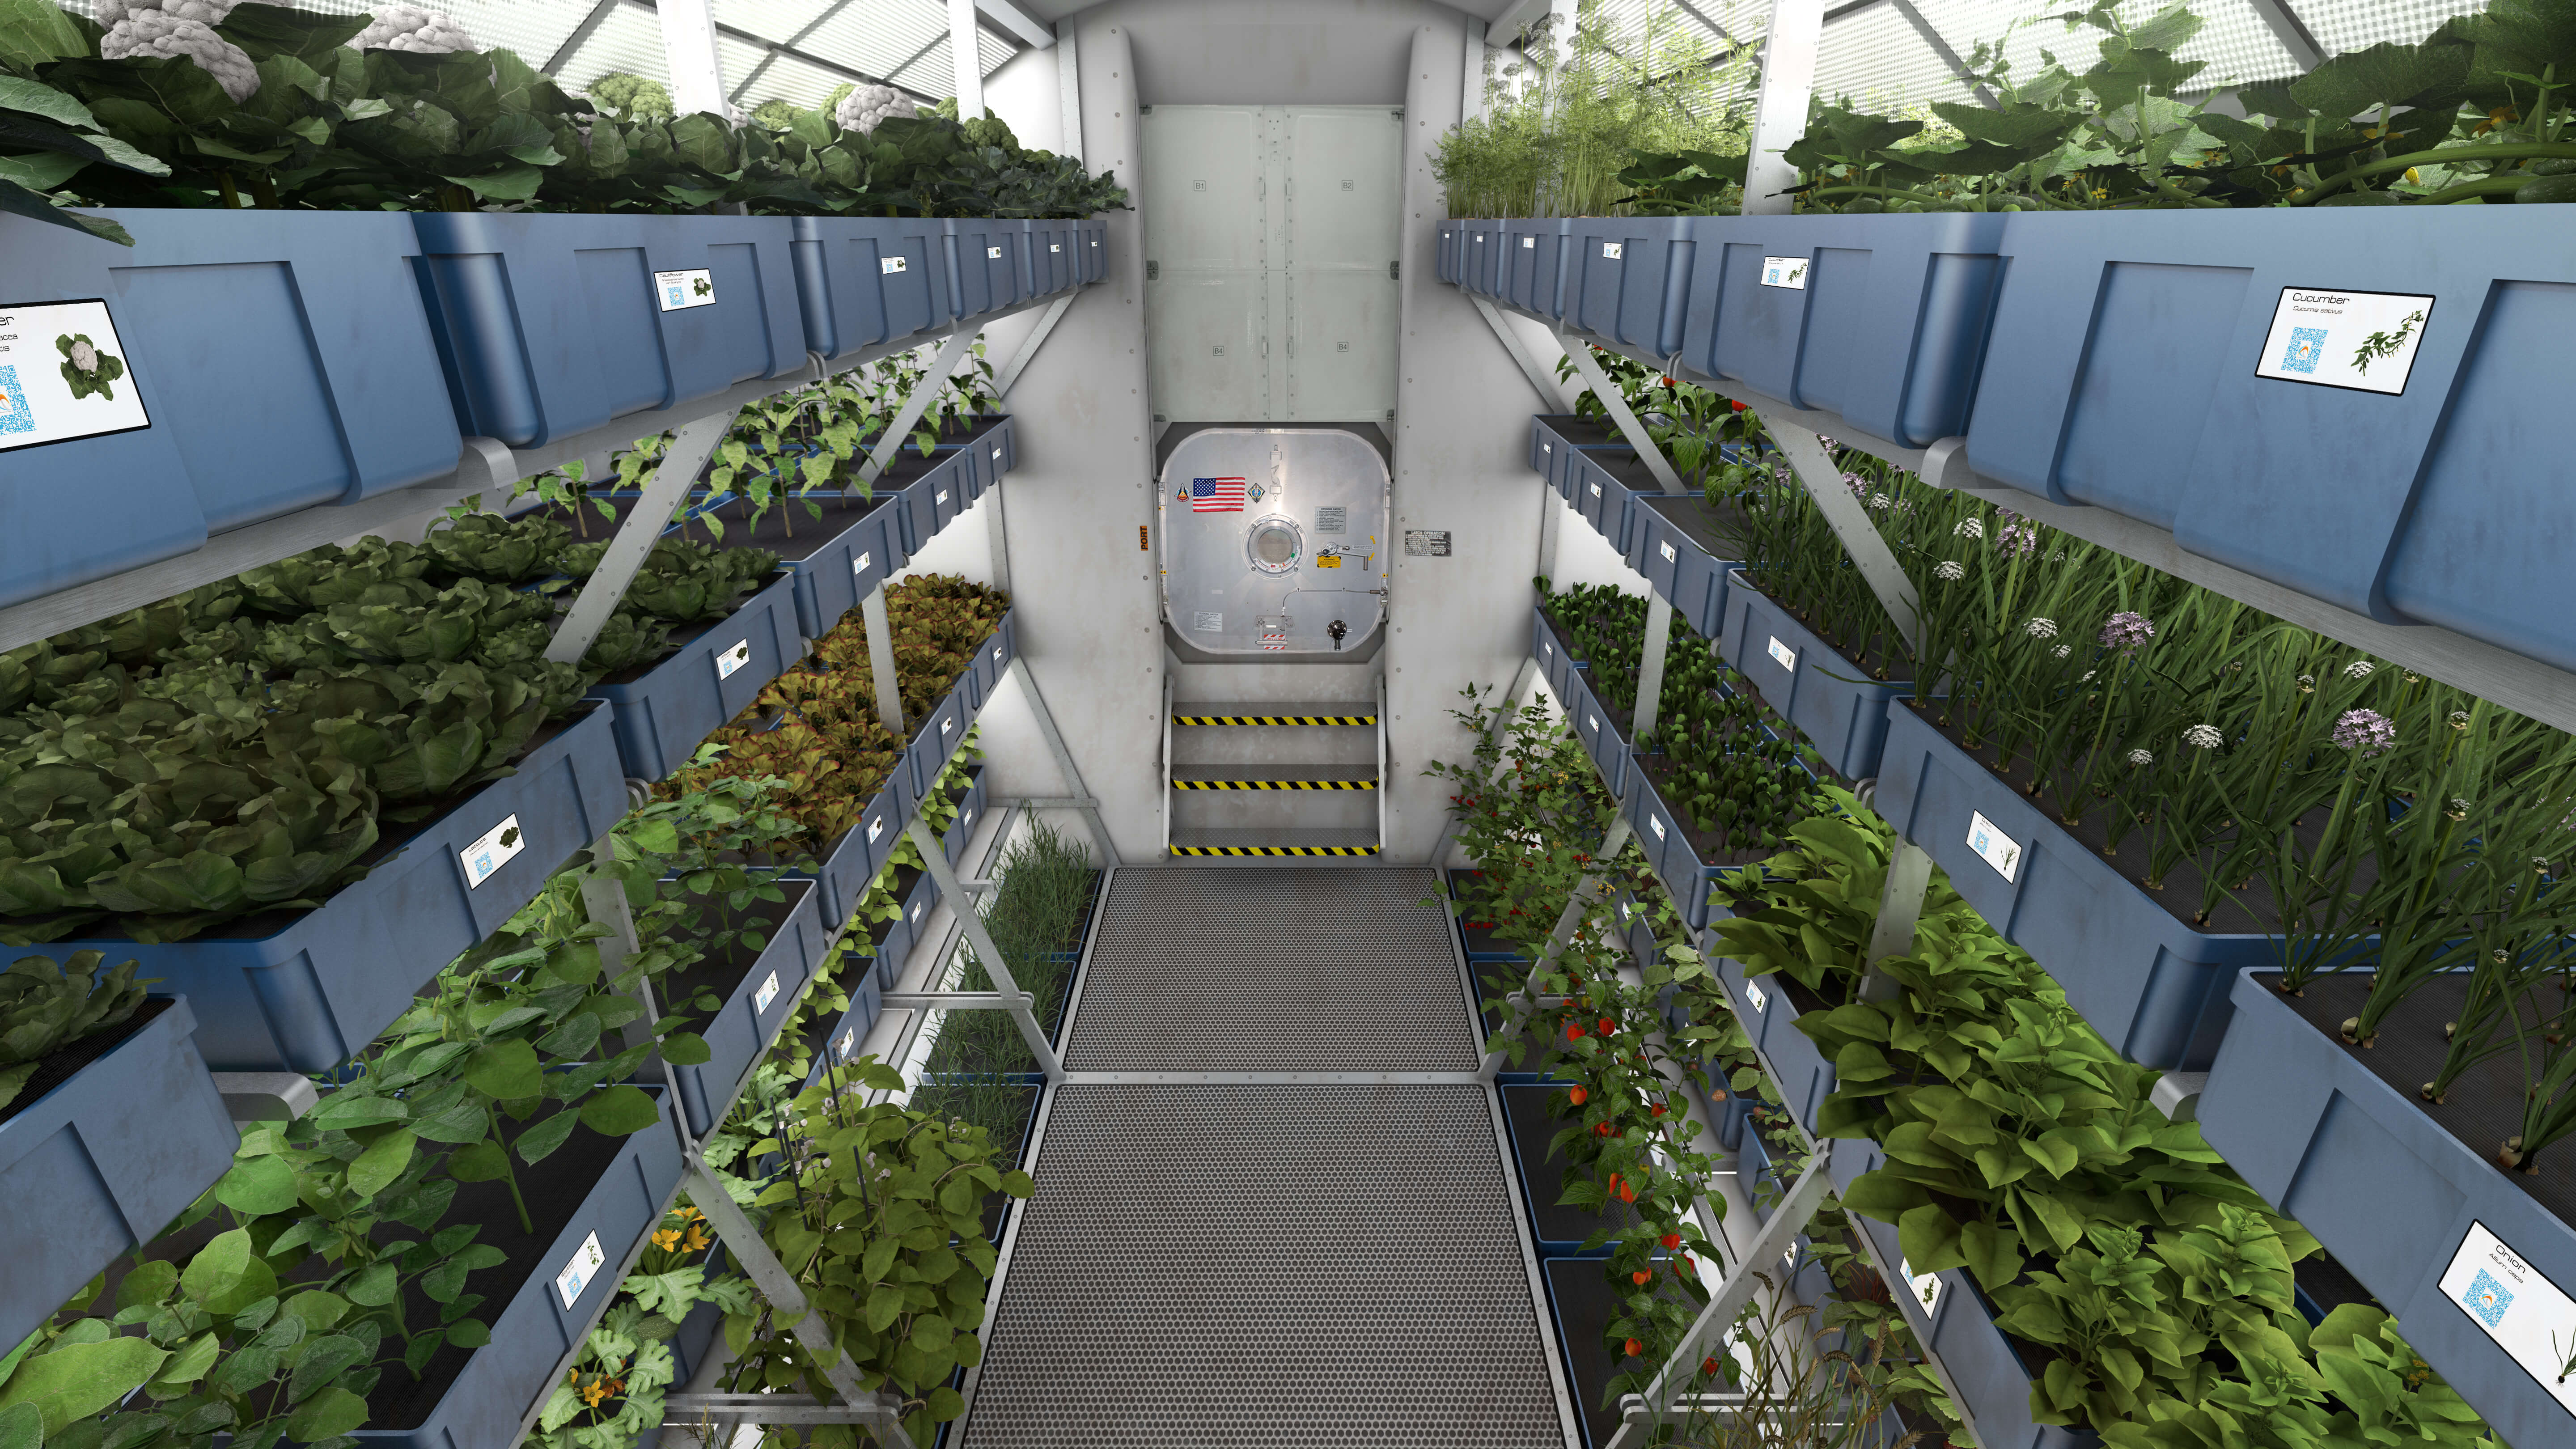 מערכת גידול הצמחים Veggie בתחנת החלל הבינלאומית. צילום: נאס"א